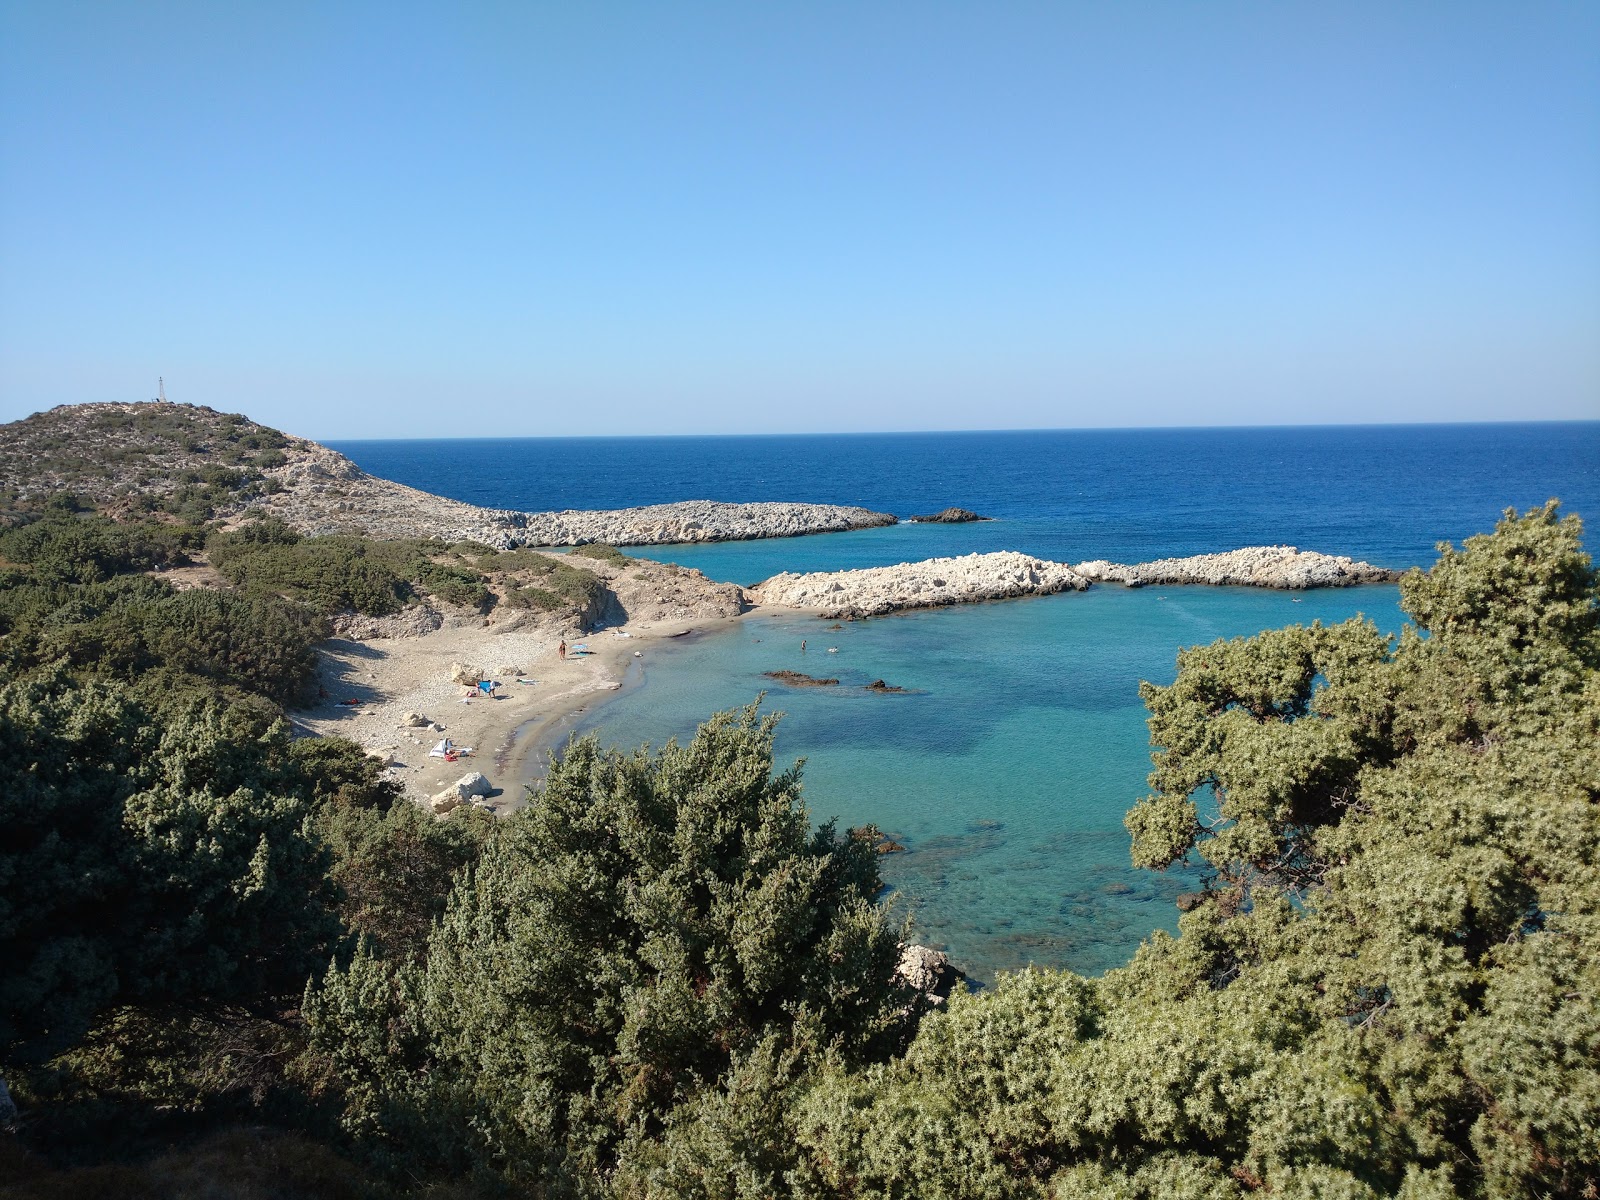 Agios Georgios'in fotoğrafı kahverengi kum yüzey ile